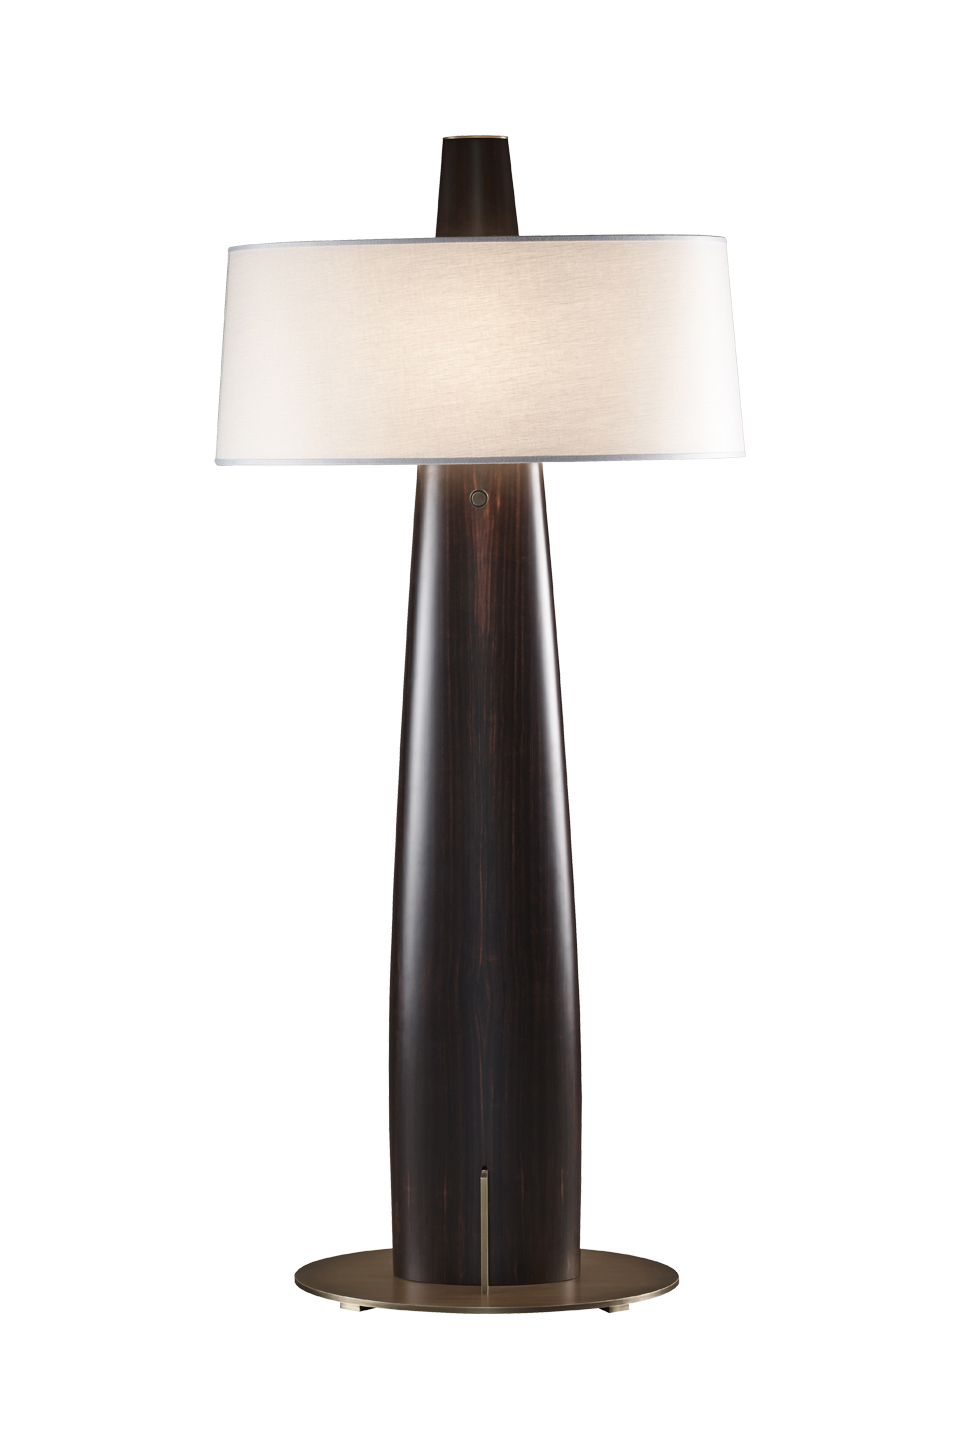 Fosca est un lampadaire LED en bois avec un piètement-socle en bronze et un abat-jour en coton, lin ou soie avec bordure cousue main. Ce luminaire figure dans le catalogue Promemoria | Promemoria